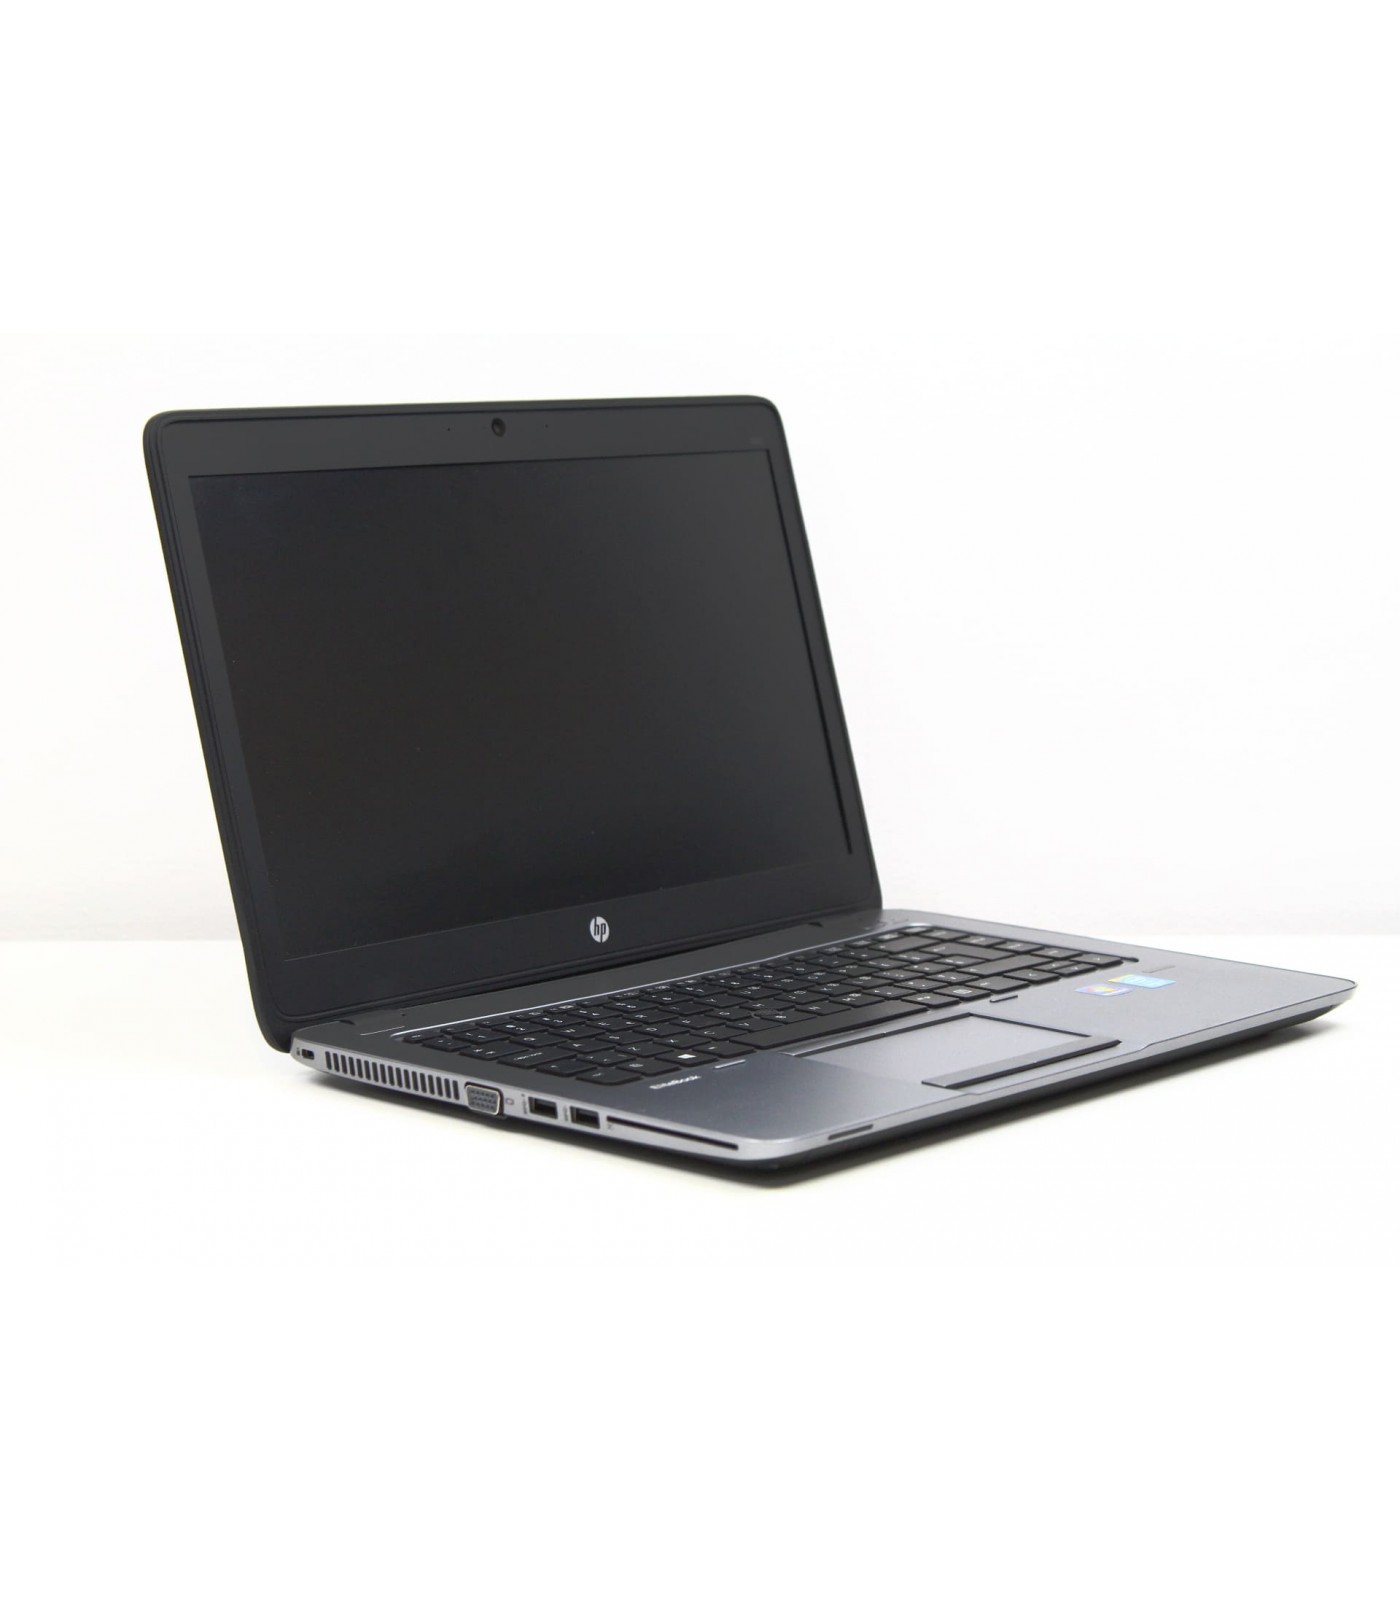 Poleasingowy laptop HP EliteBook 840 G2 z Intel Core i5-5300u w klasie A.